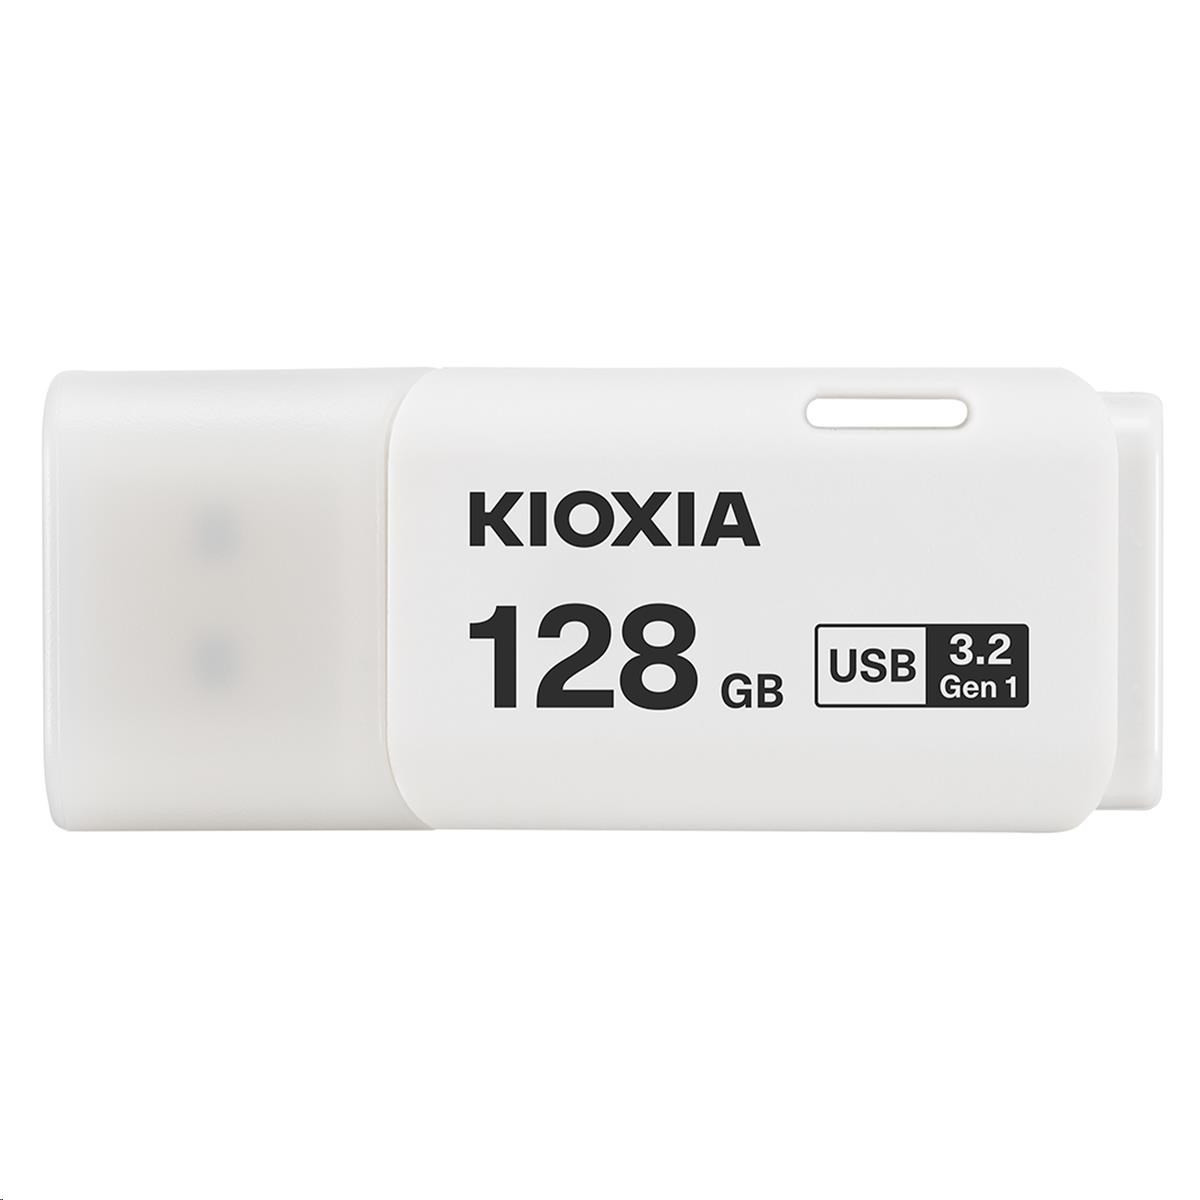 KIOXIA Hayabusa Flash drive 128GB U301, biela